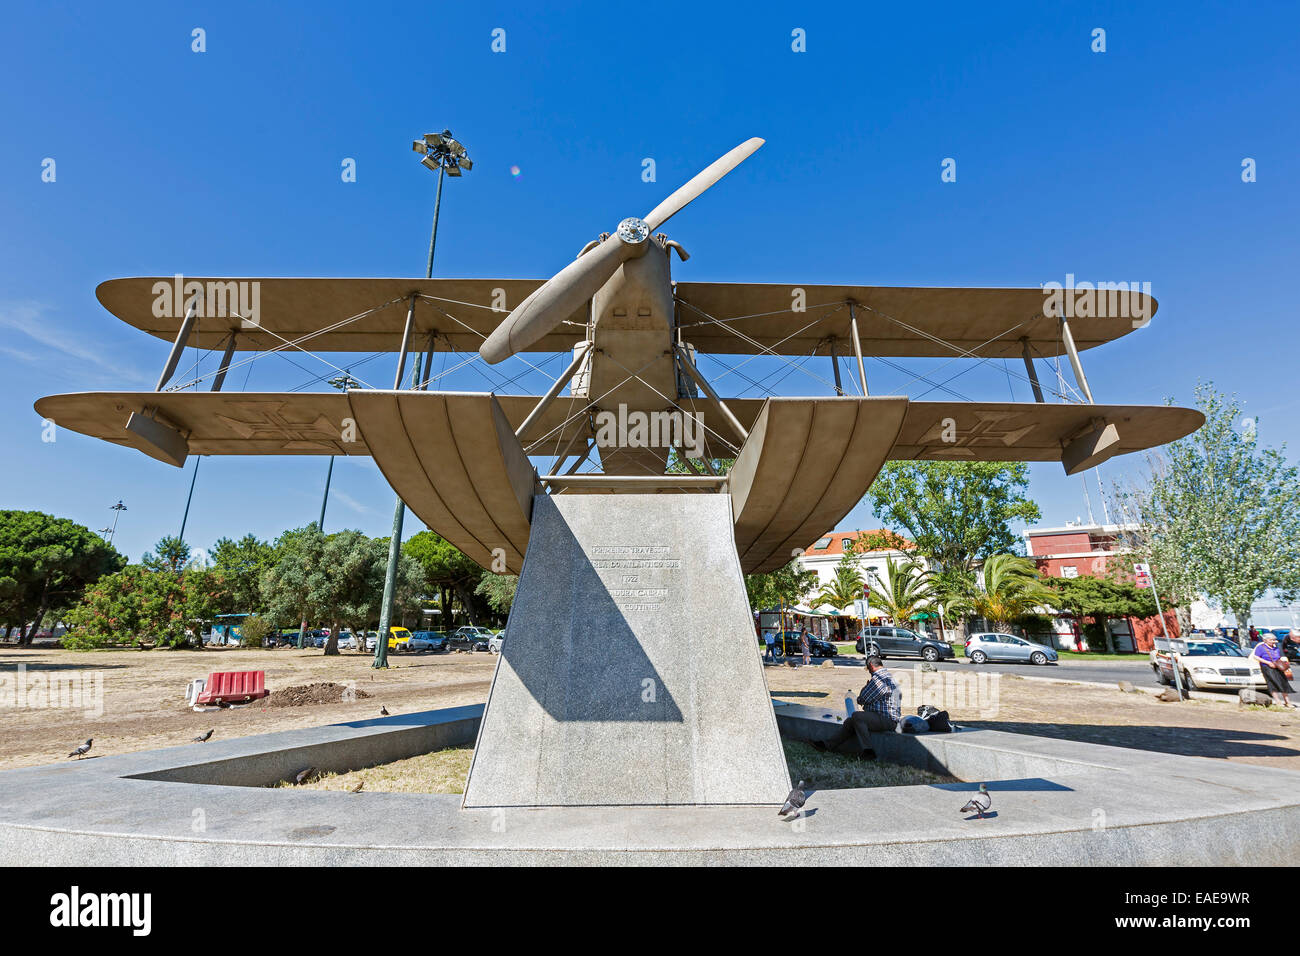 Denkmal mit dem Wasserflugzeug Santa Cruz, mit denen Sacadura Cabral und Gago Coutinho die ersten Südatlantik Antenne abgeschlossen Stockfoto